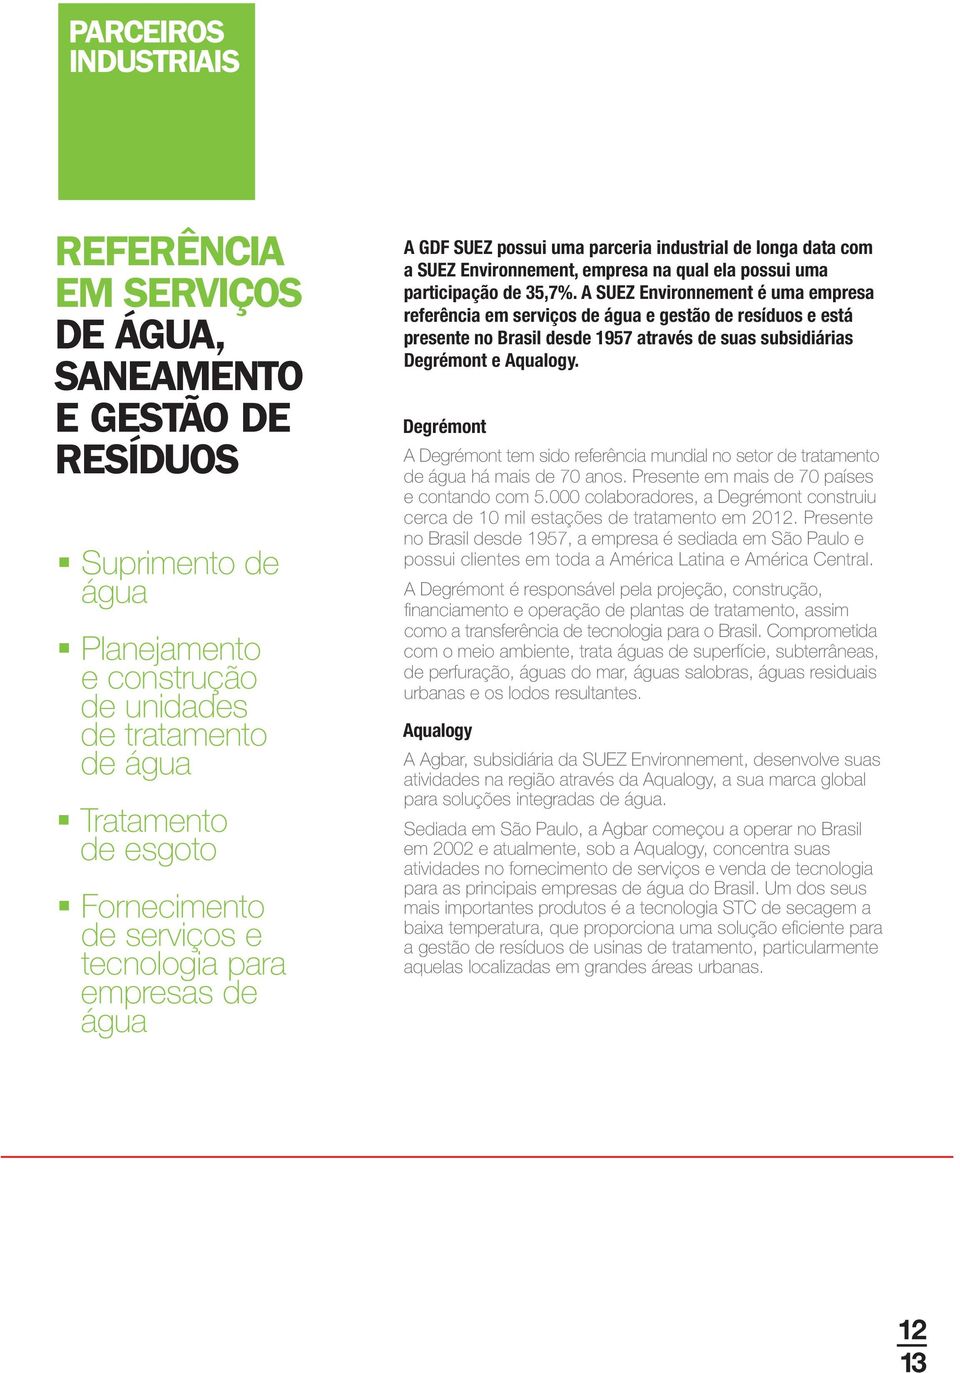 A SUEZ Environnement é uma empresa referência em serviços de água e gestão de resíduos e está presente no Brasil desde 1957 através de suas subsidiárias Degrémont e Aqualogy.